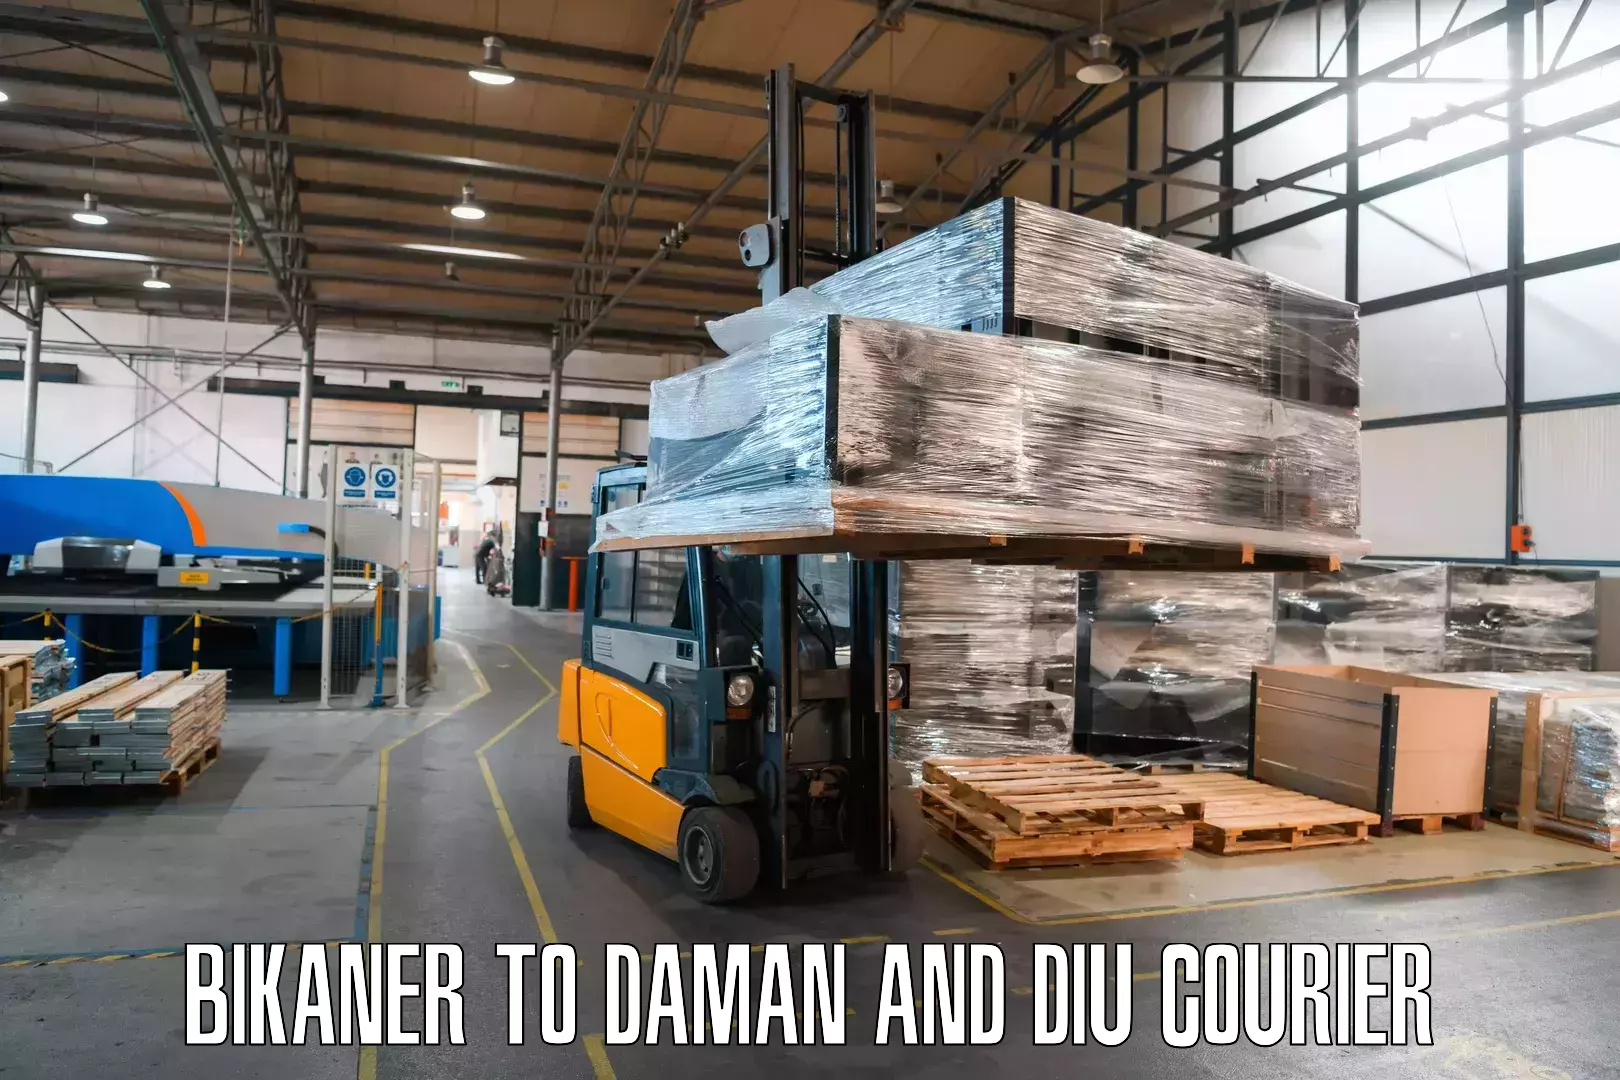 Efficient freight service Bikaner to Daman and Diu